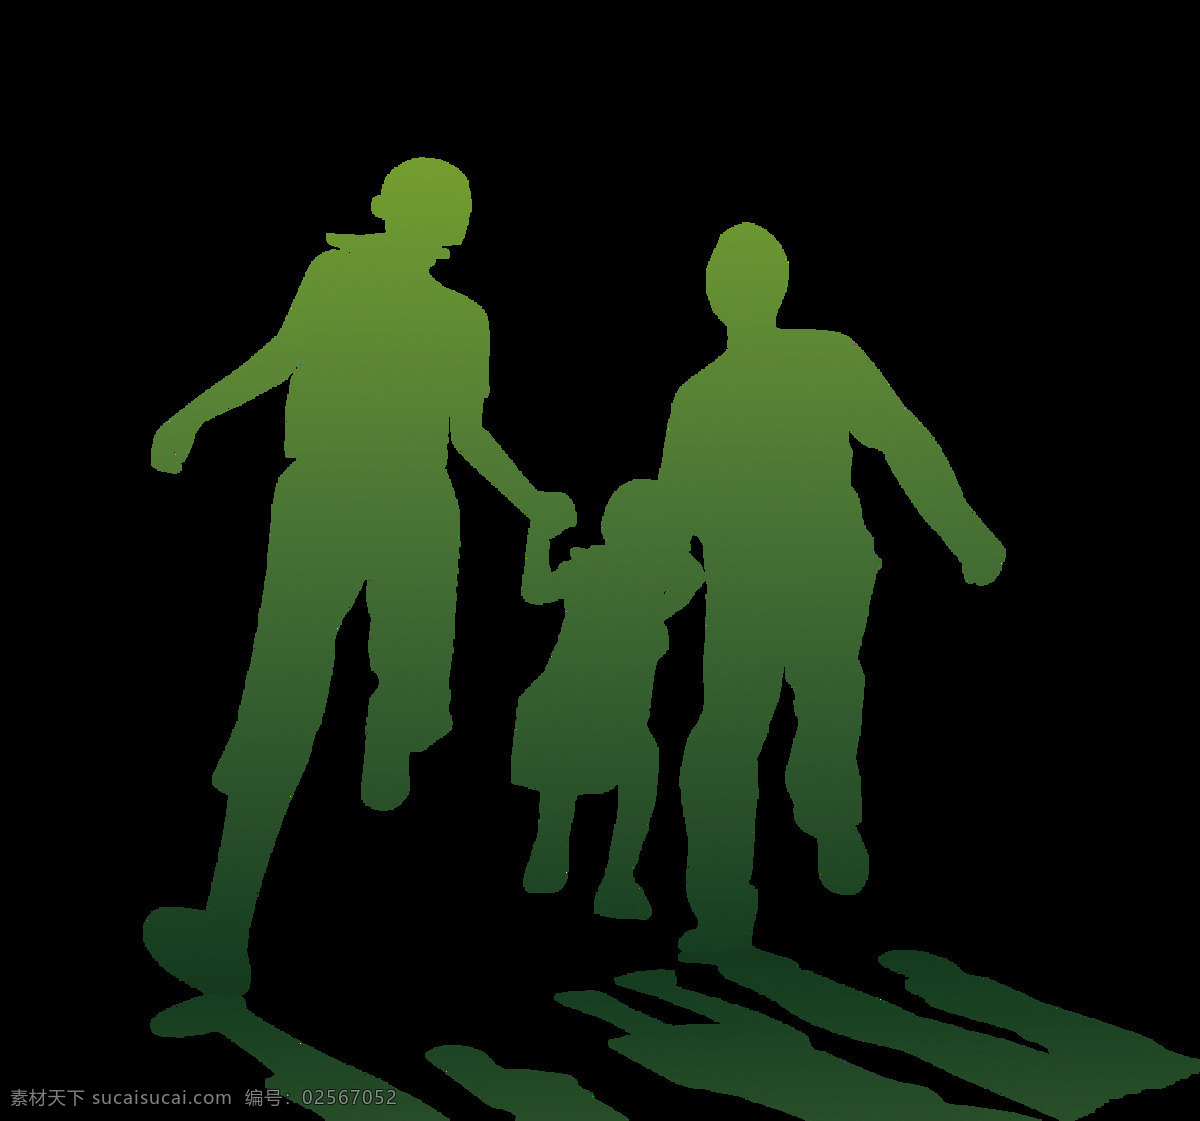 一家人 奔跑的人 行动 活动 成人 身体 孩子 竞争运动 健康 插画